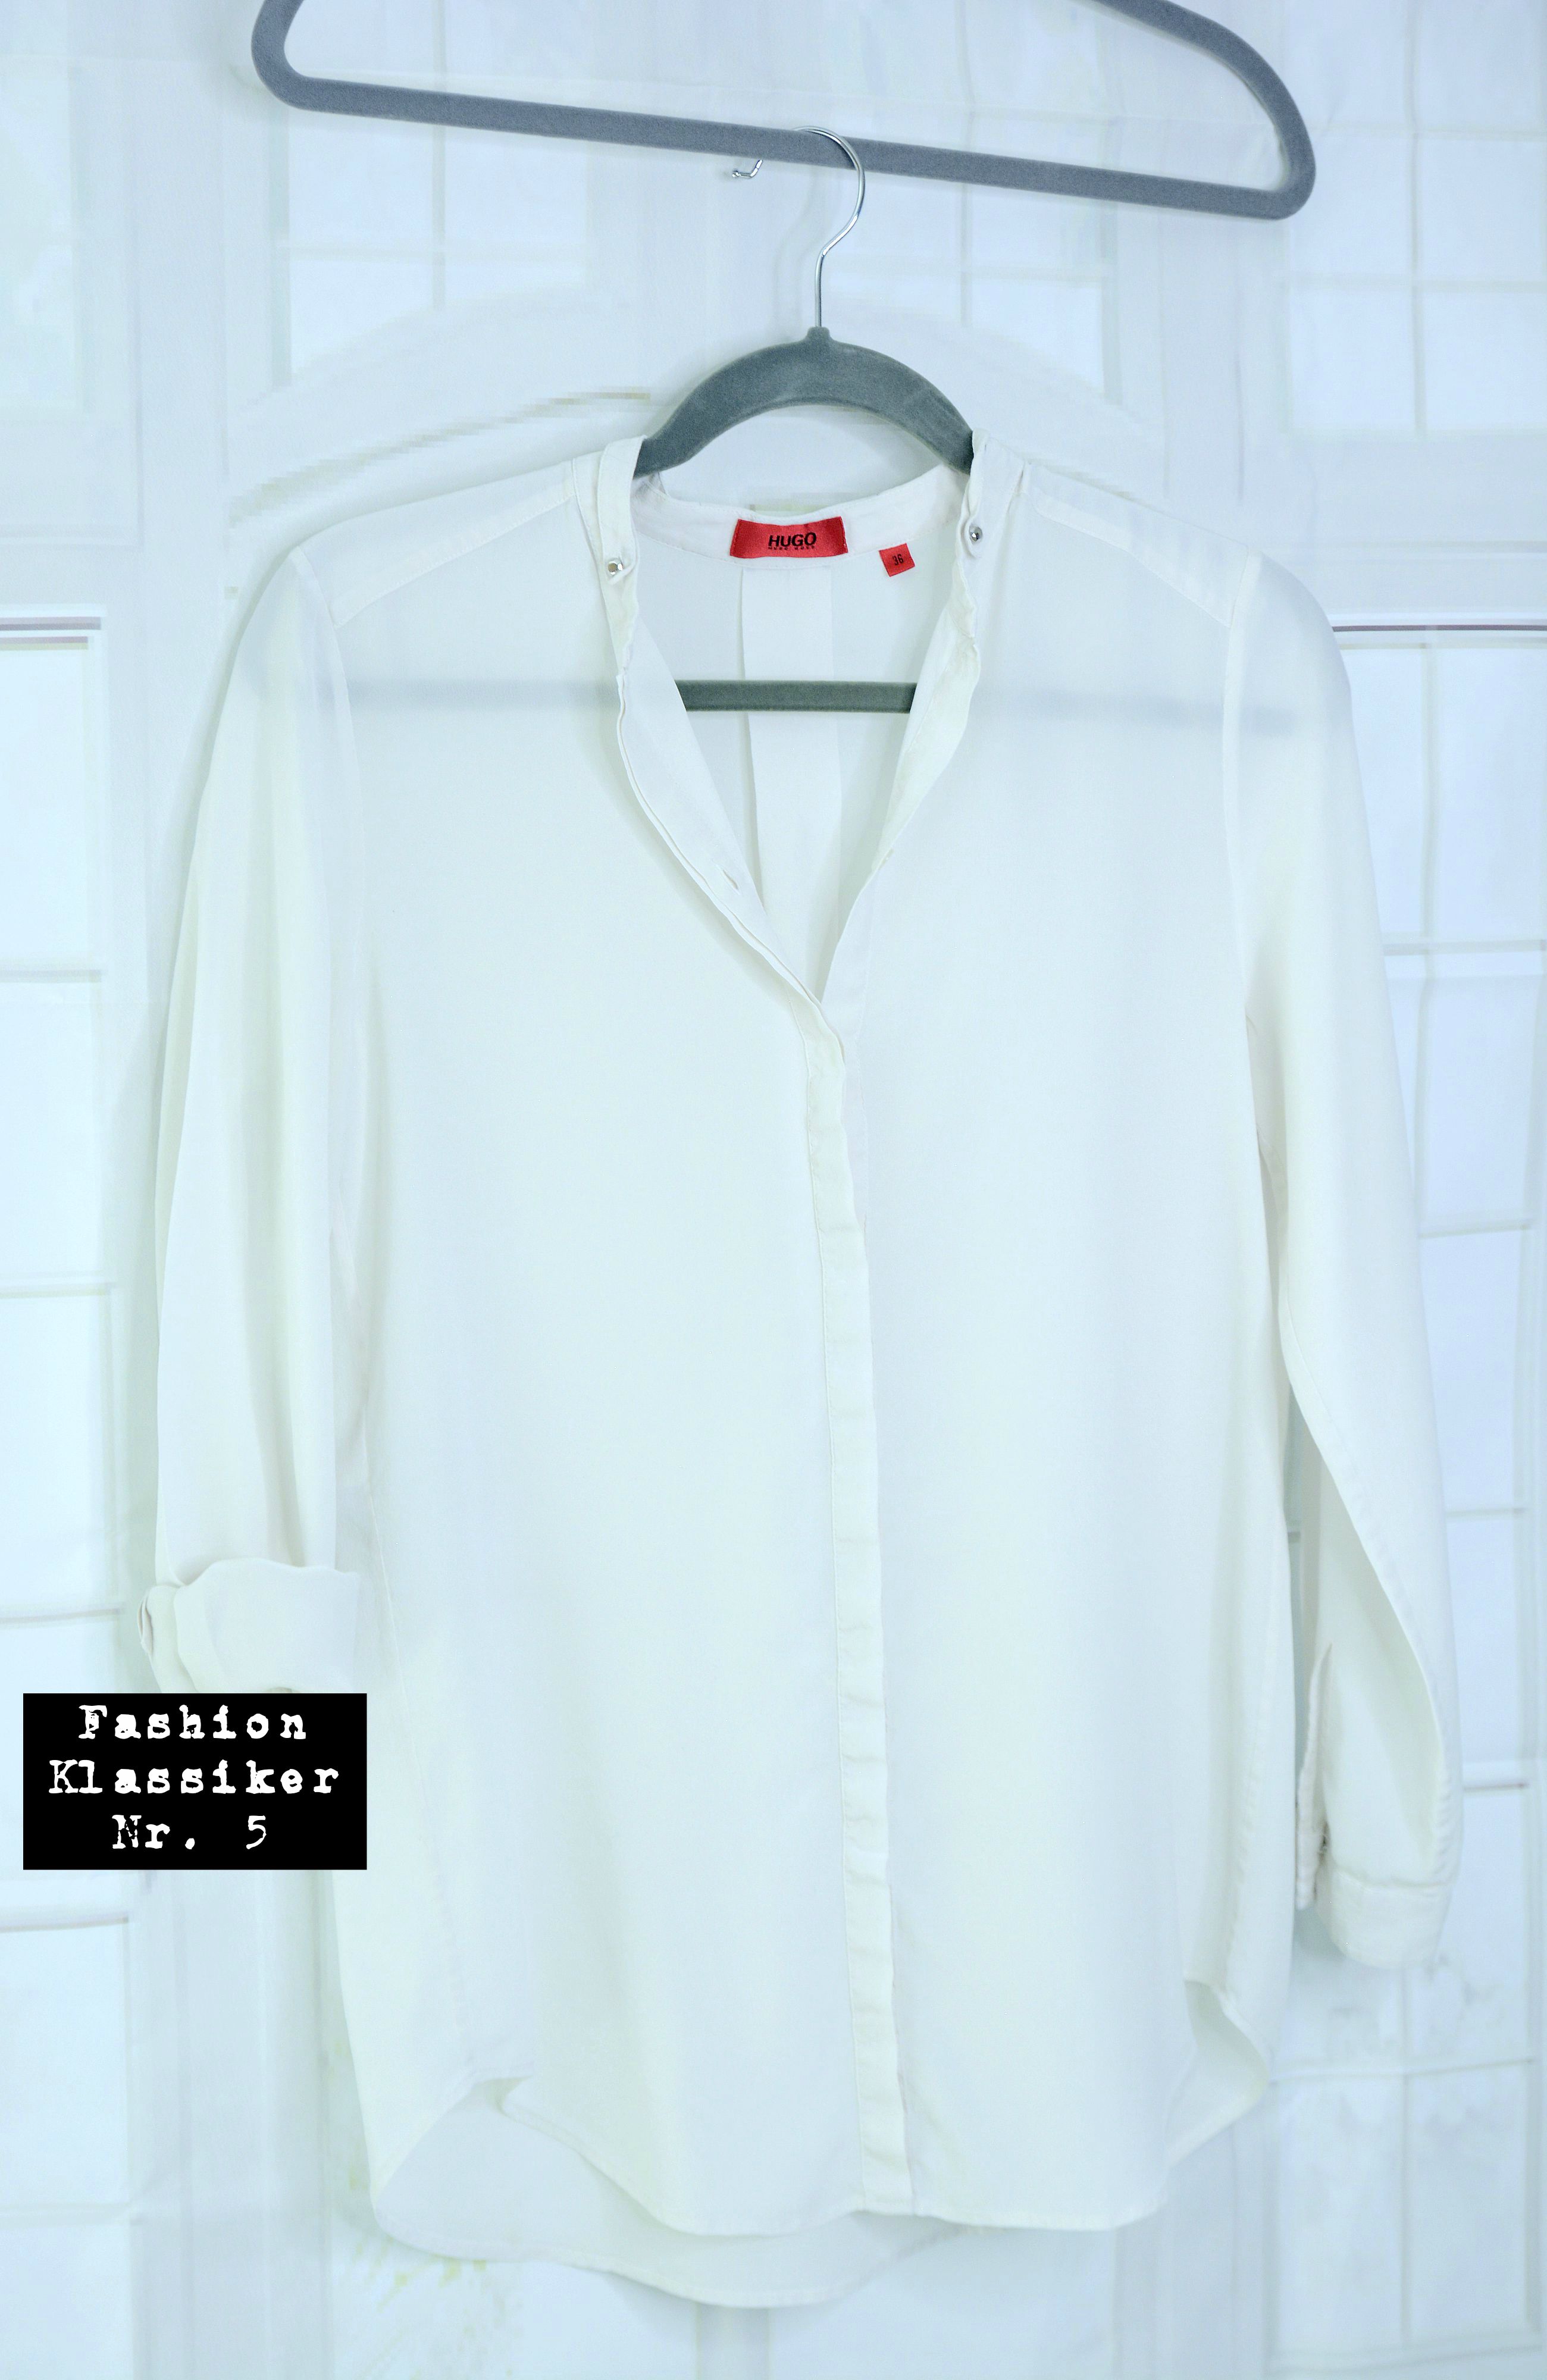 Fashion Klassiker: weiße Bluse